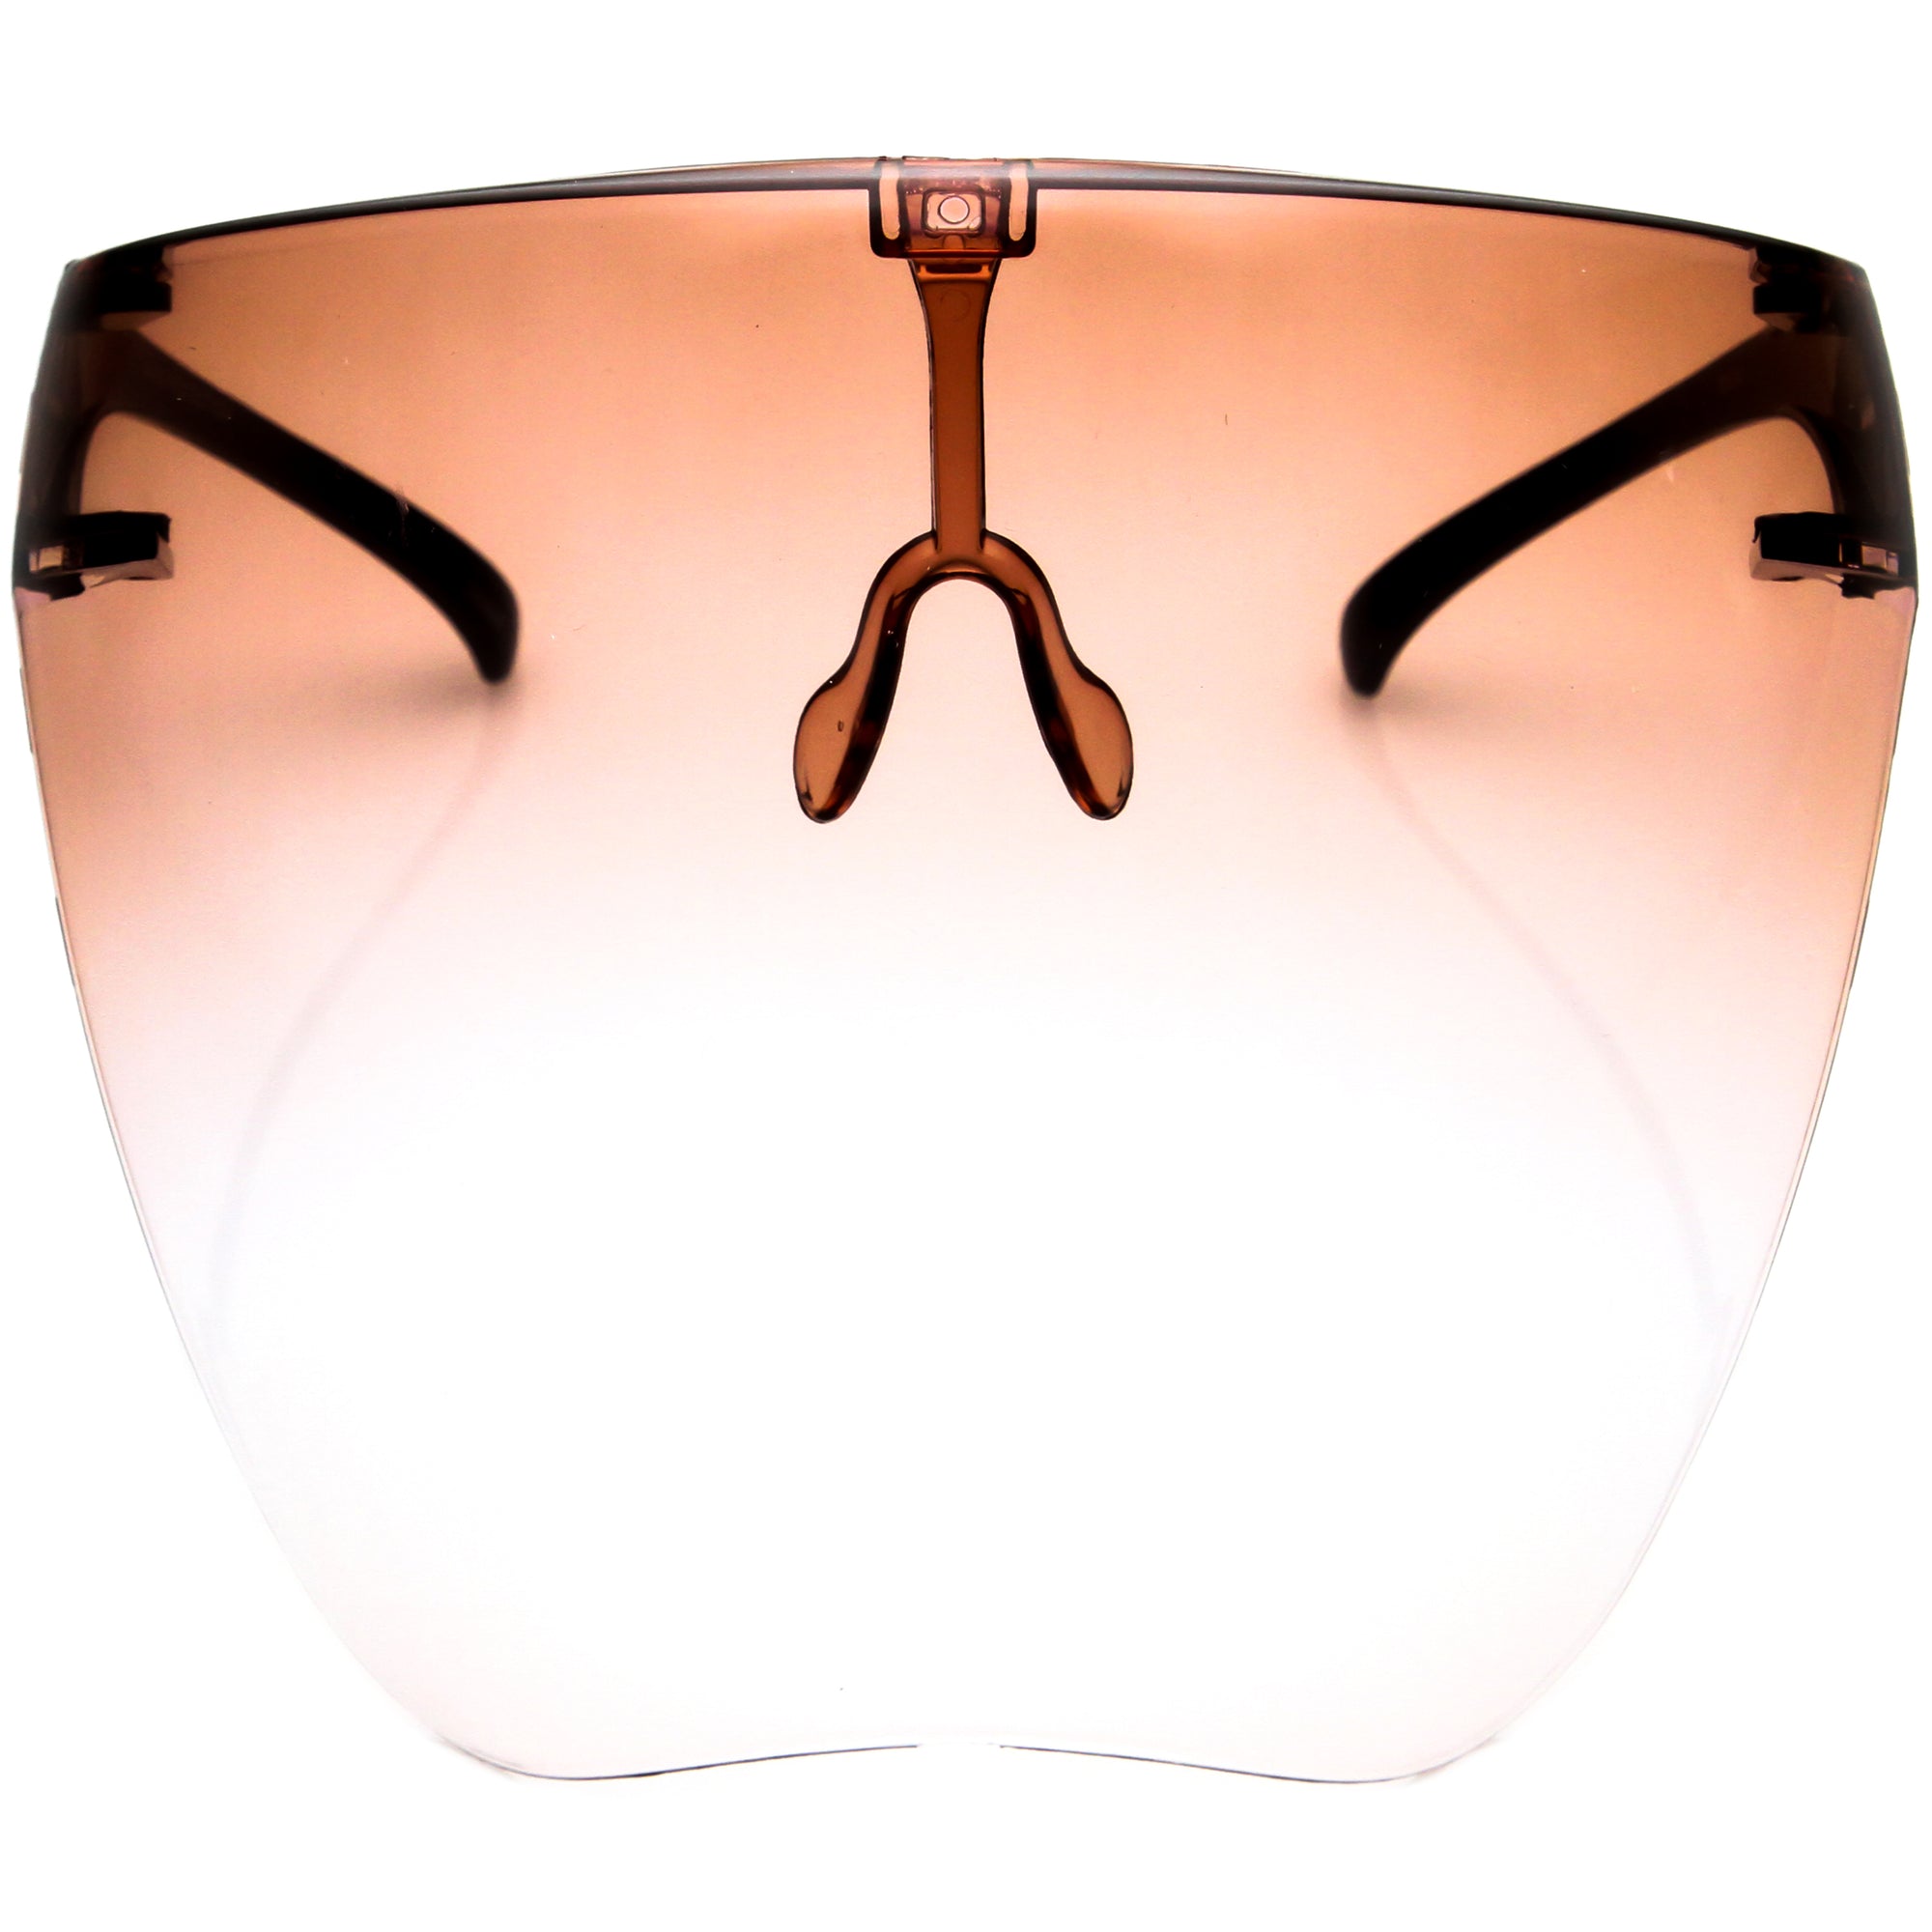 Ombre Protective Face Shield Full Cover Visor Glasses/Sunglasses (Anti-Fog) D188, Apricot Ombre | zeroUV